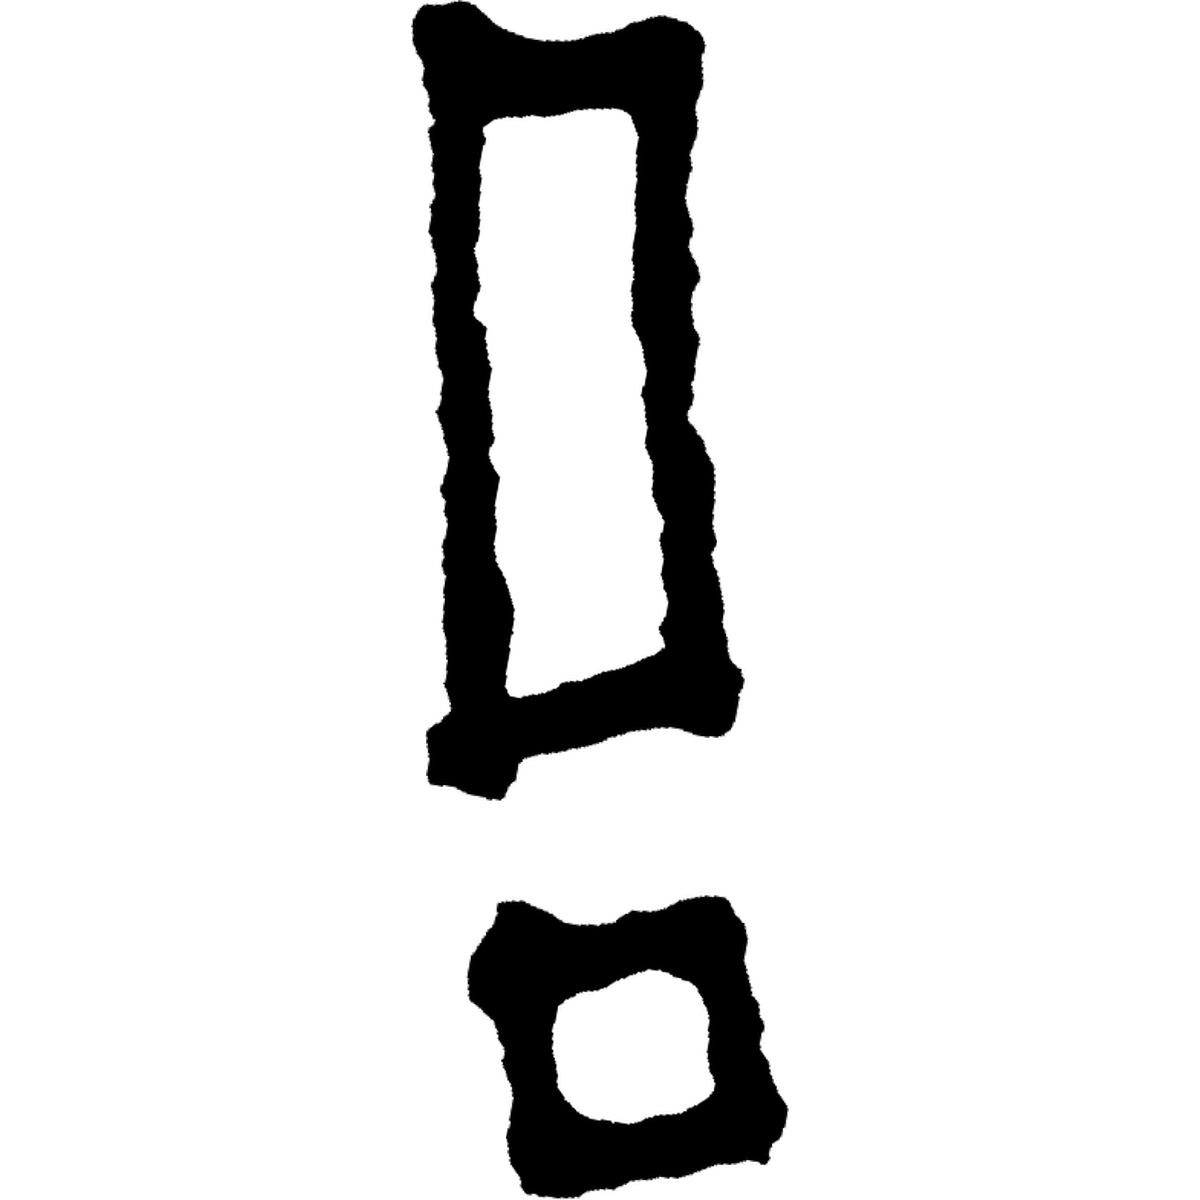 ビックリマーク3のイラスト Exclamation mark Illust